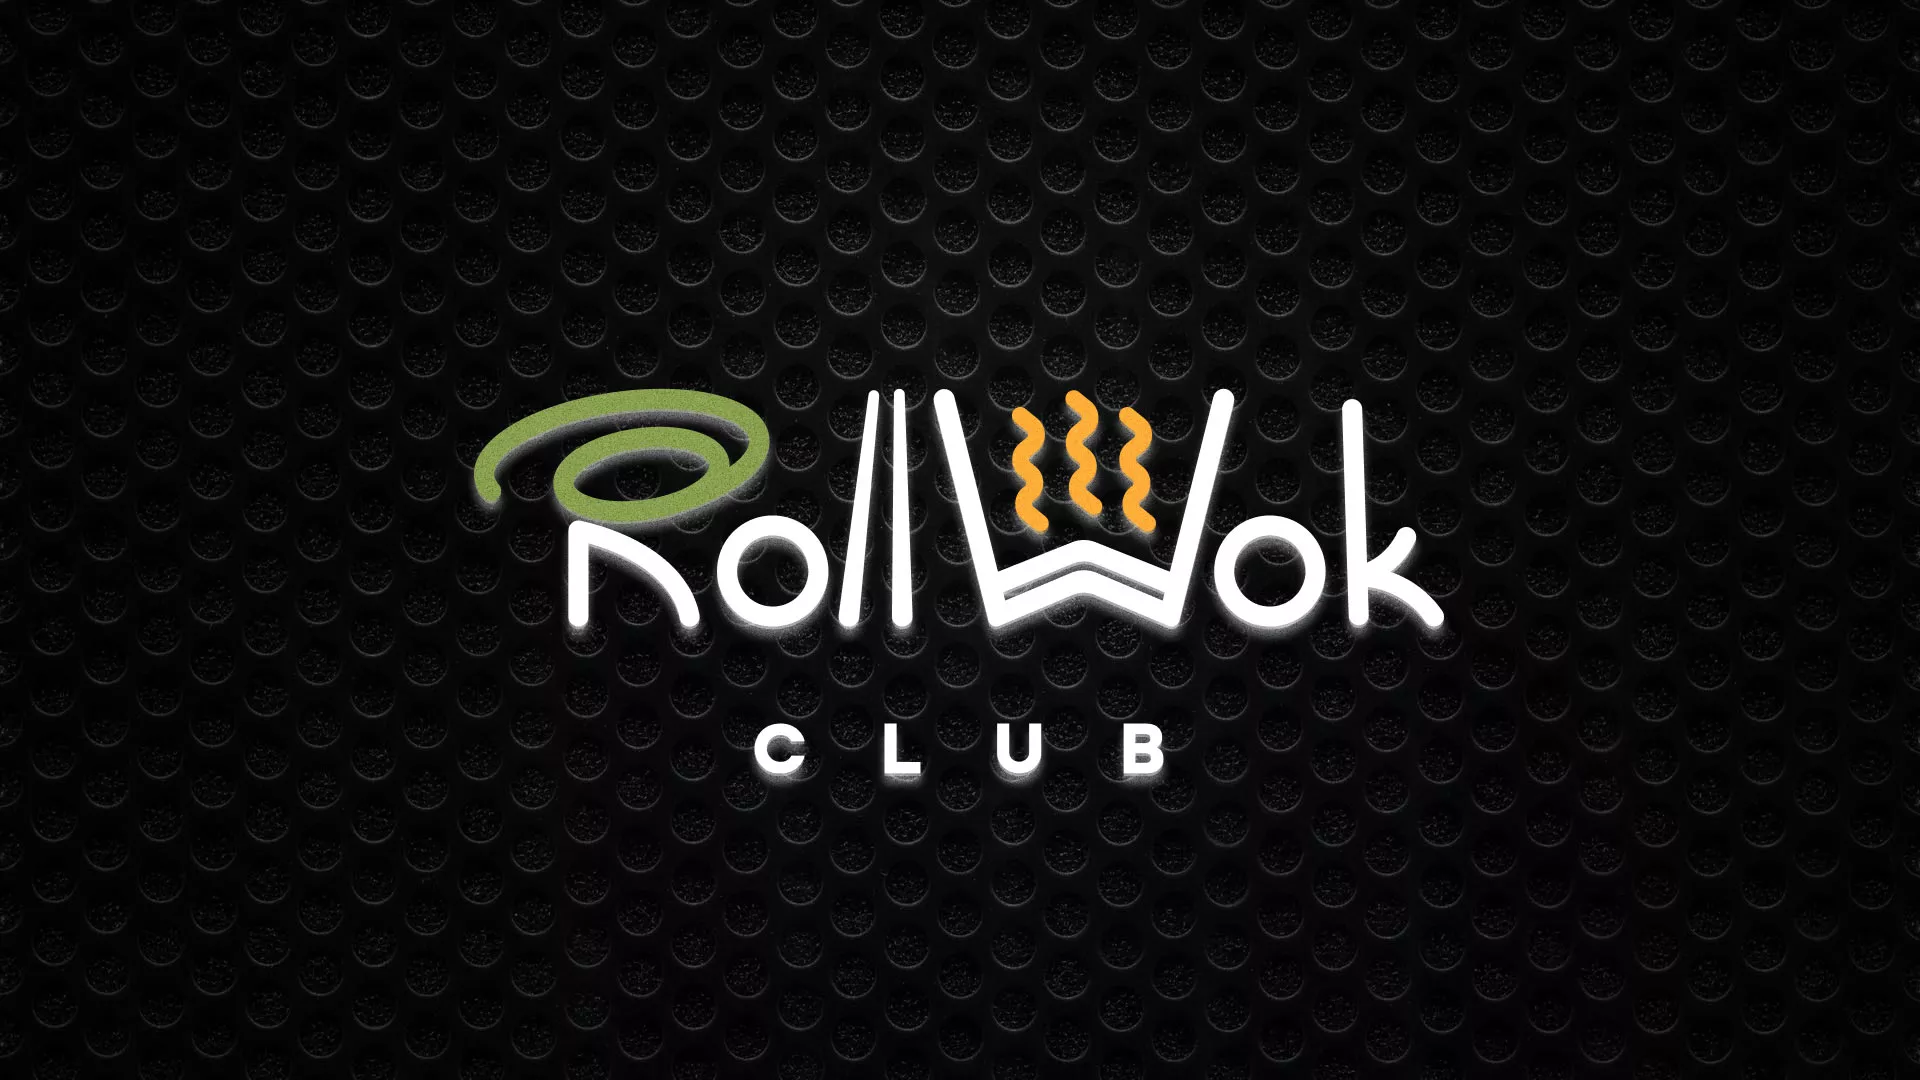 Брендирование торговых точек суши-бара «Roll Wok Club» в Кисловодске